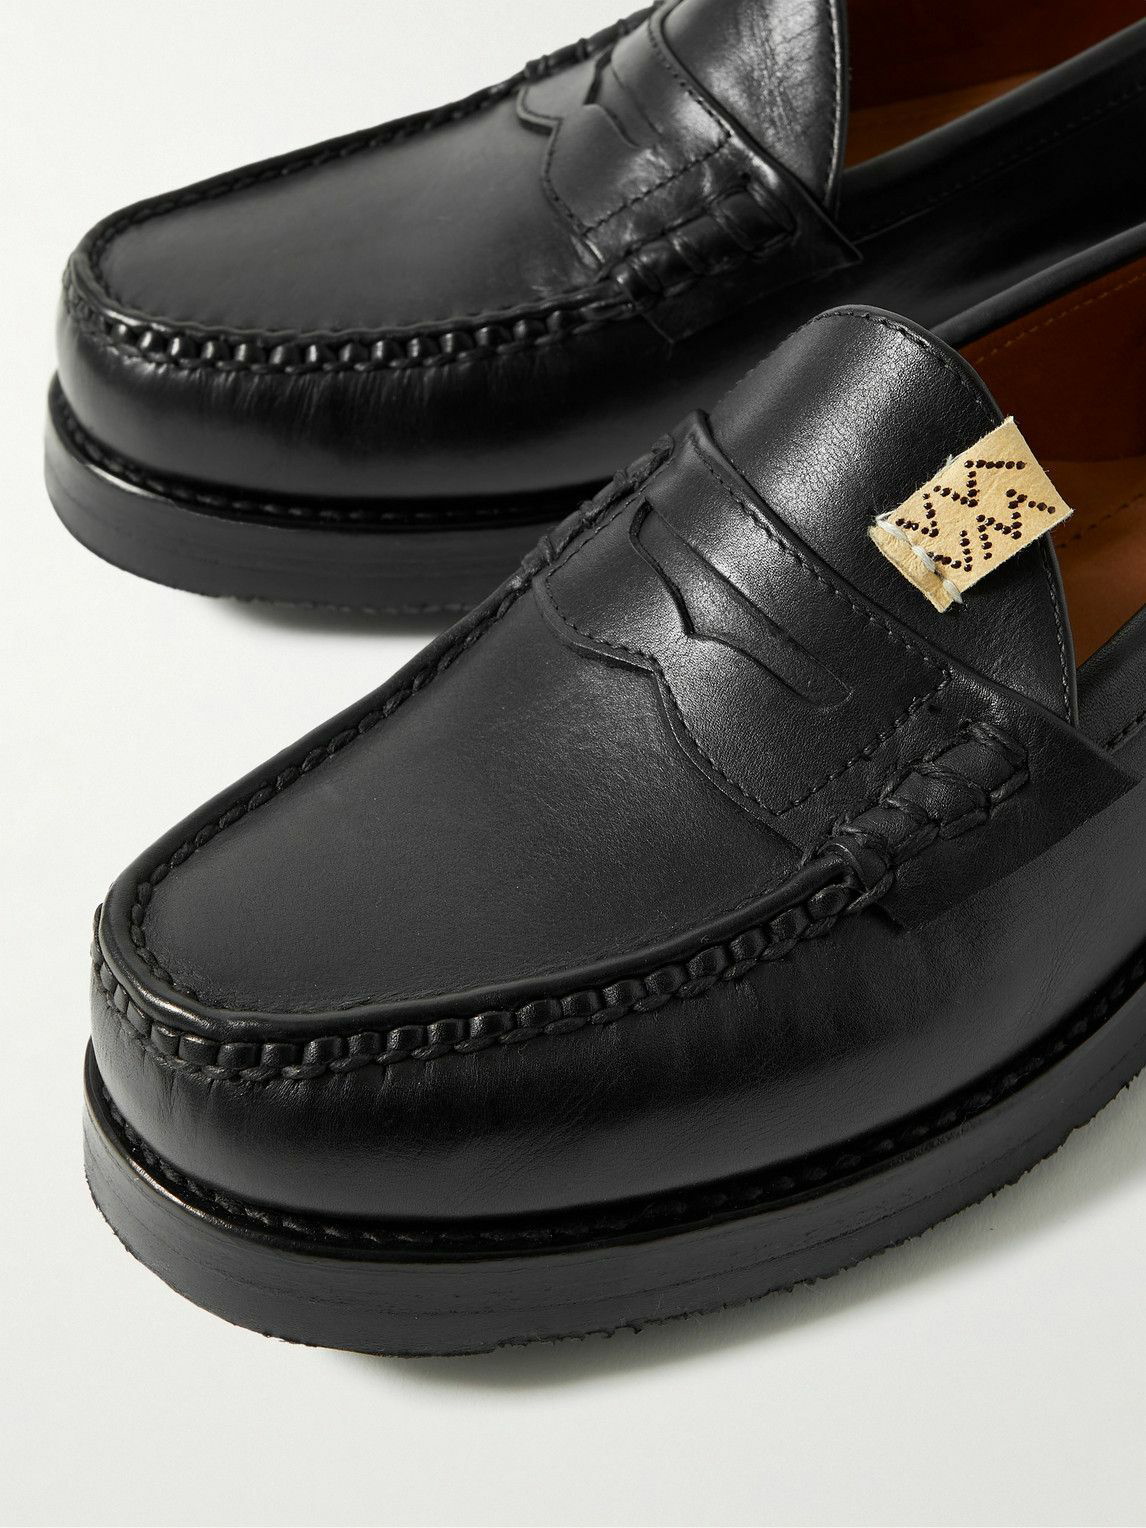 高品質特価品 visvim loafers FABRO CG-FOLK us8.5 - 靴